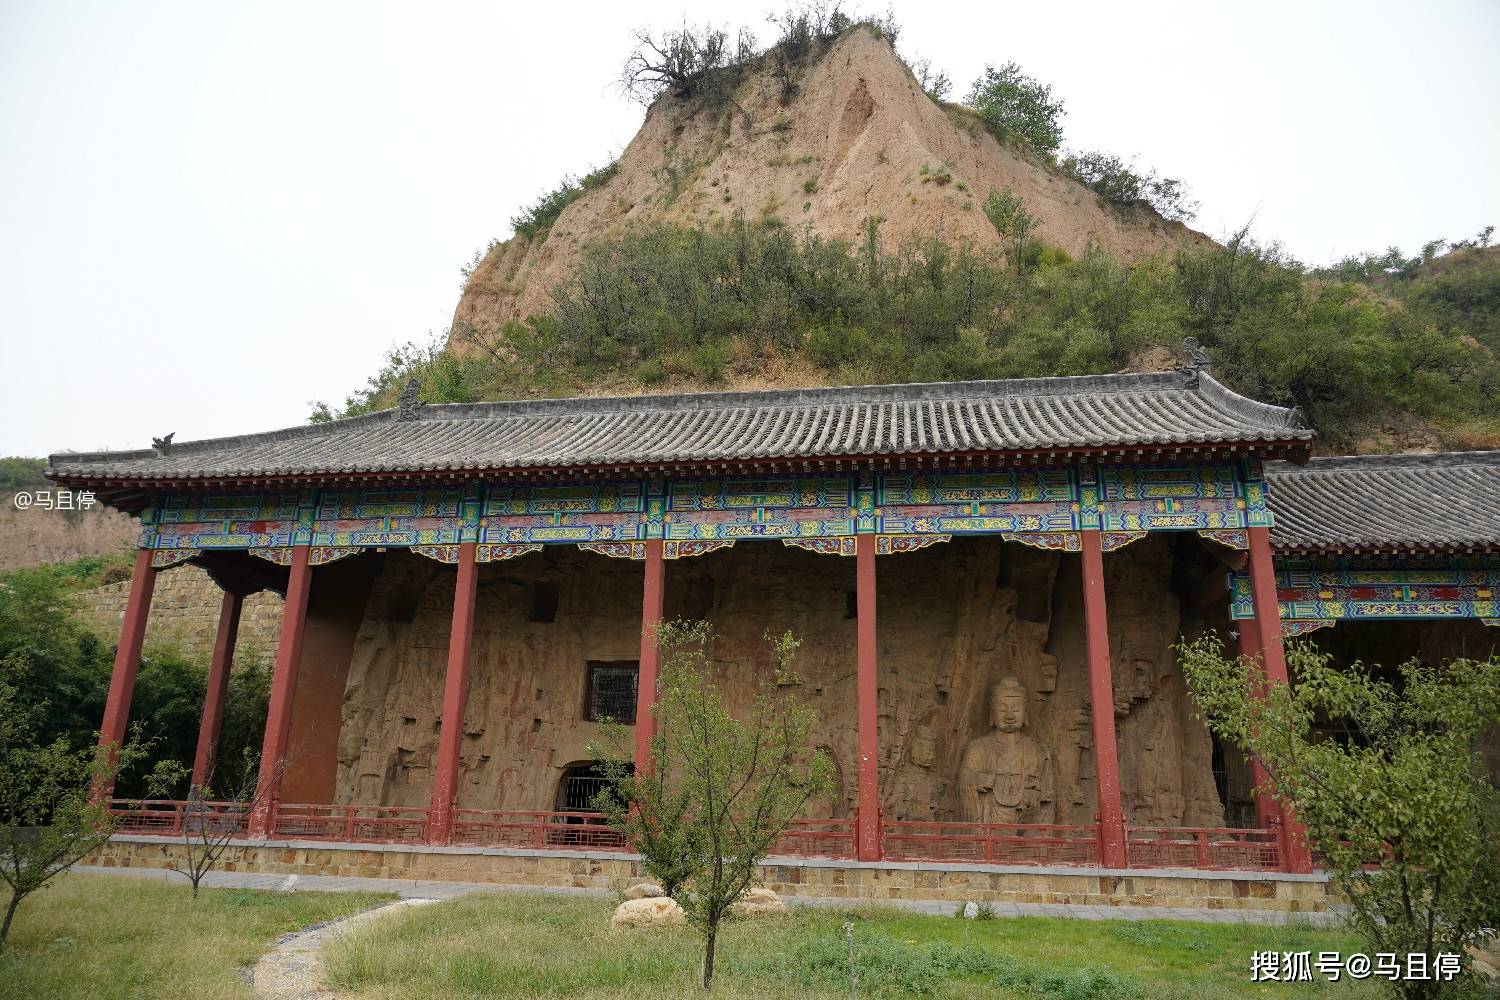 河南有个小县,藏有媲美龙门的北魏石窟,曾为众多皇帝的礼佛之地